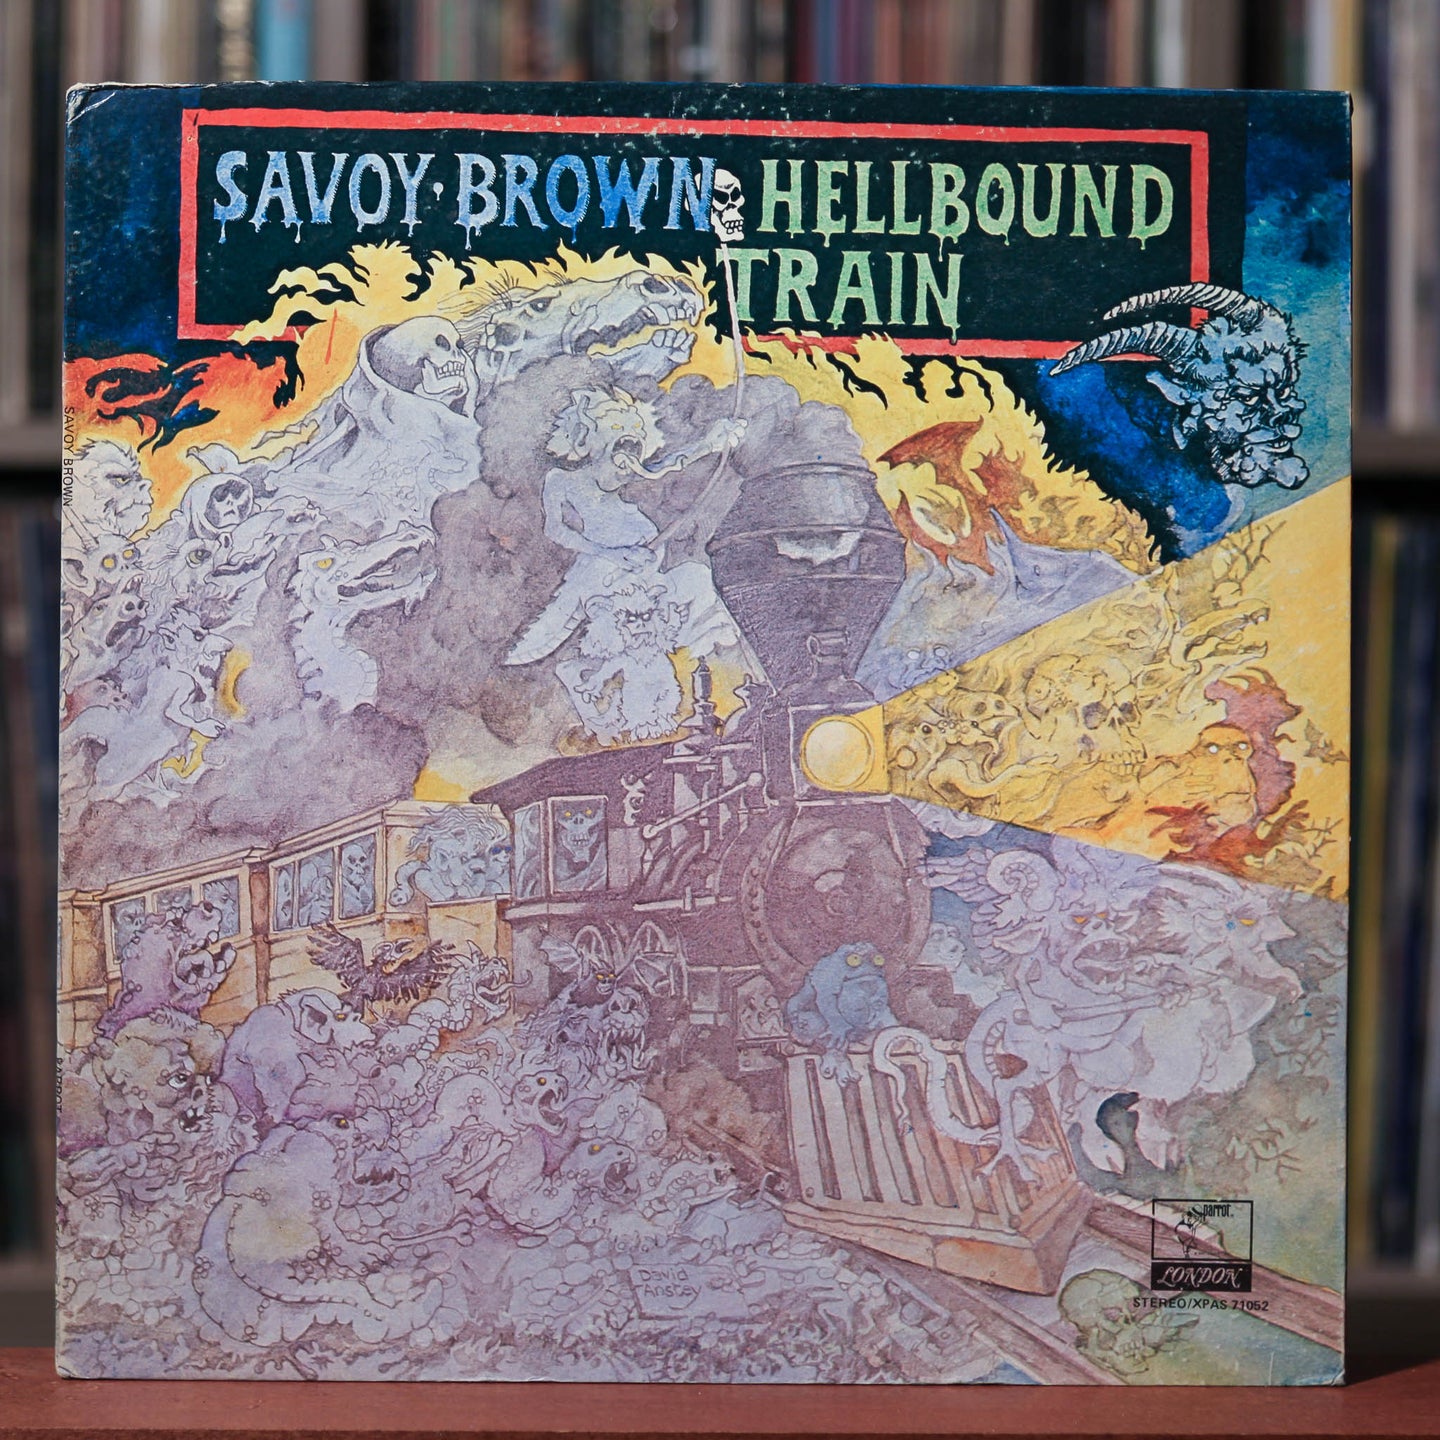 Savoy Brown - Hellbound Train - 1972 Parrot, EX/VG+